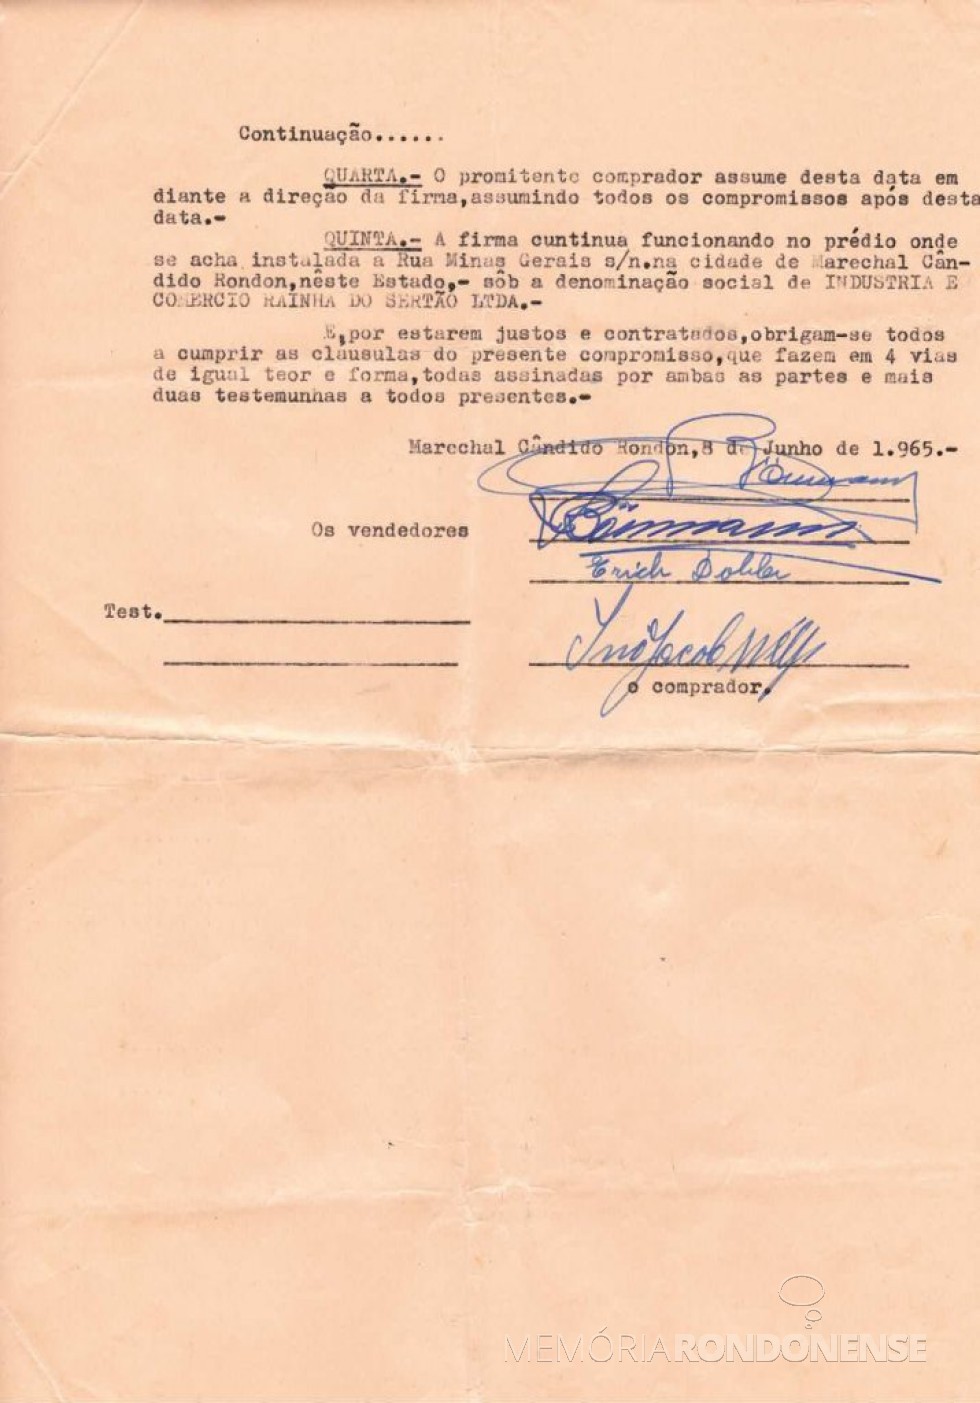 Contrato (parte final)  da venda e compra da Industria e Comércio Rainha do Sertão Ltda., em junho de 1965.
Imagem: Acervo Alípio Dobler - FOTO 4 - 